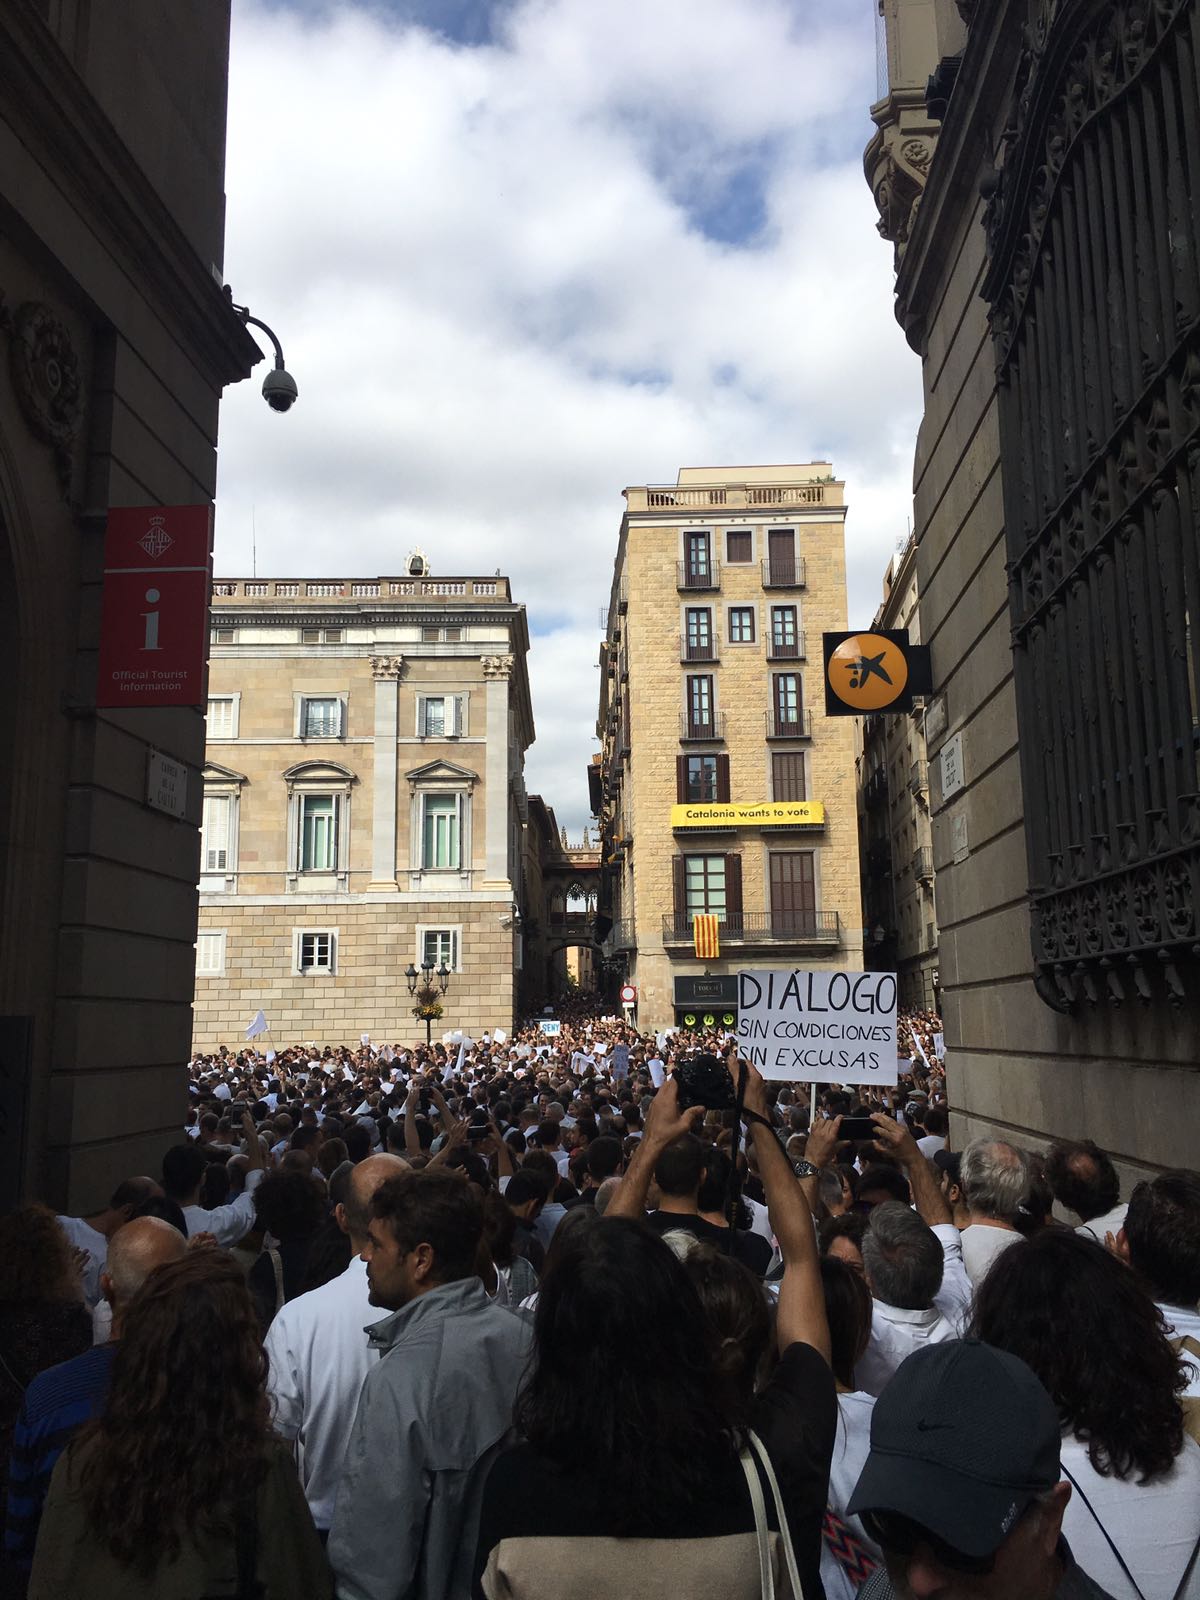 Las manifestaciones a favor del diálogo y la unidad de España, en imágenes 10